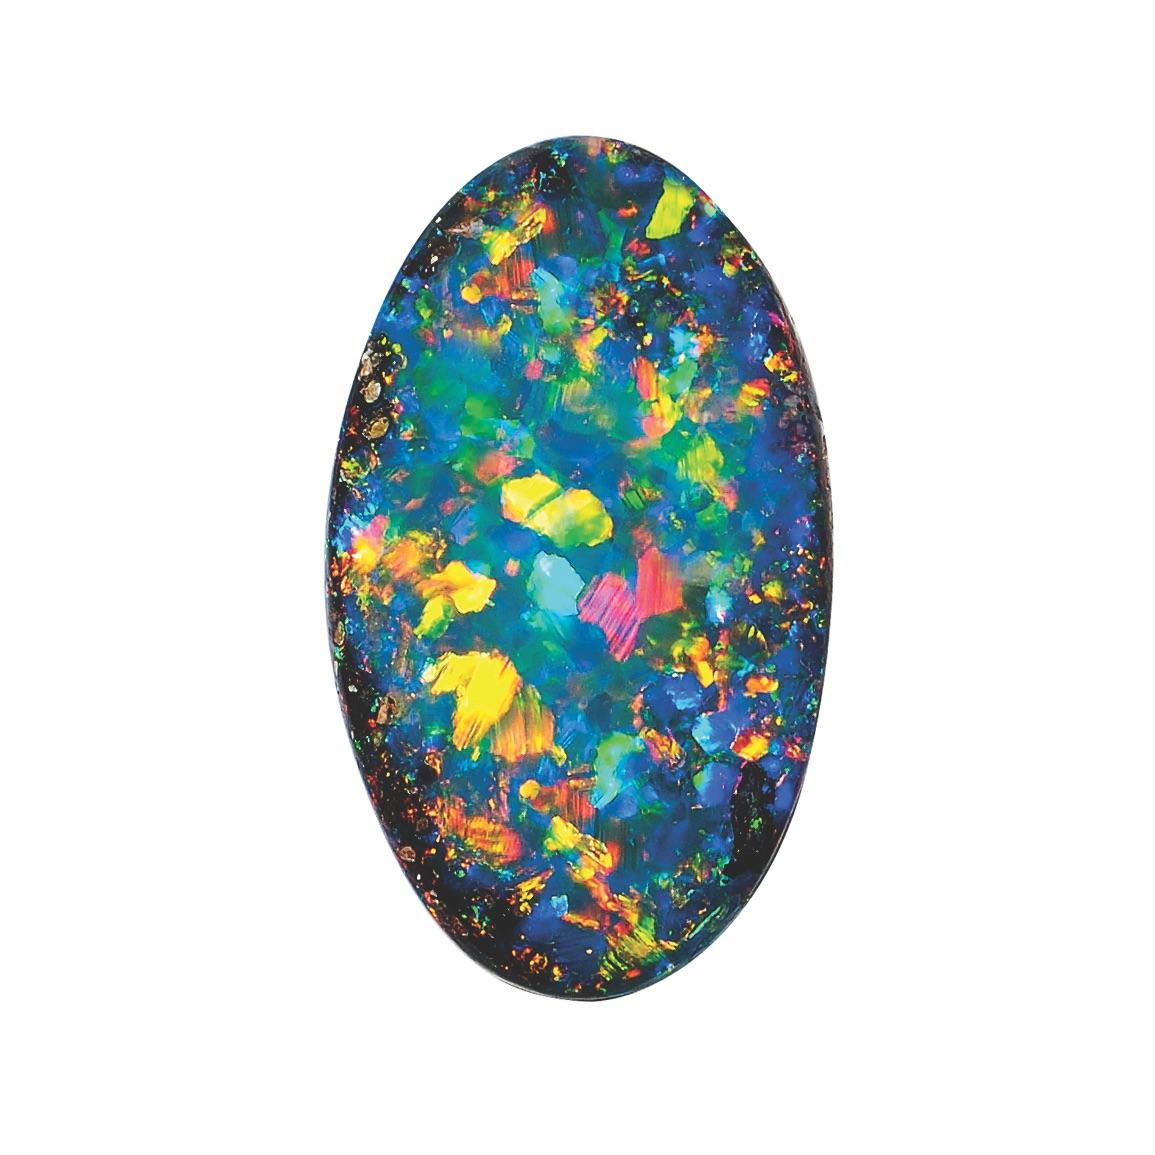 boulder opal engagement ring